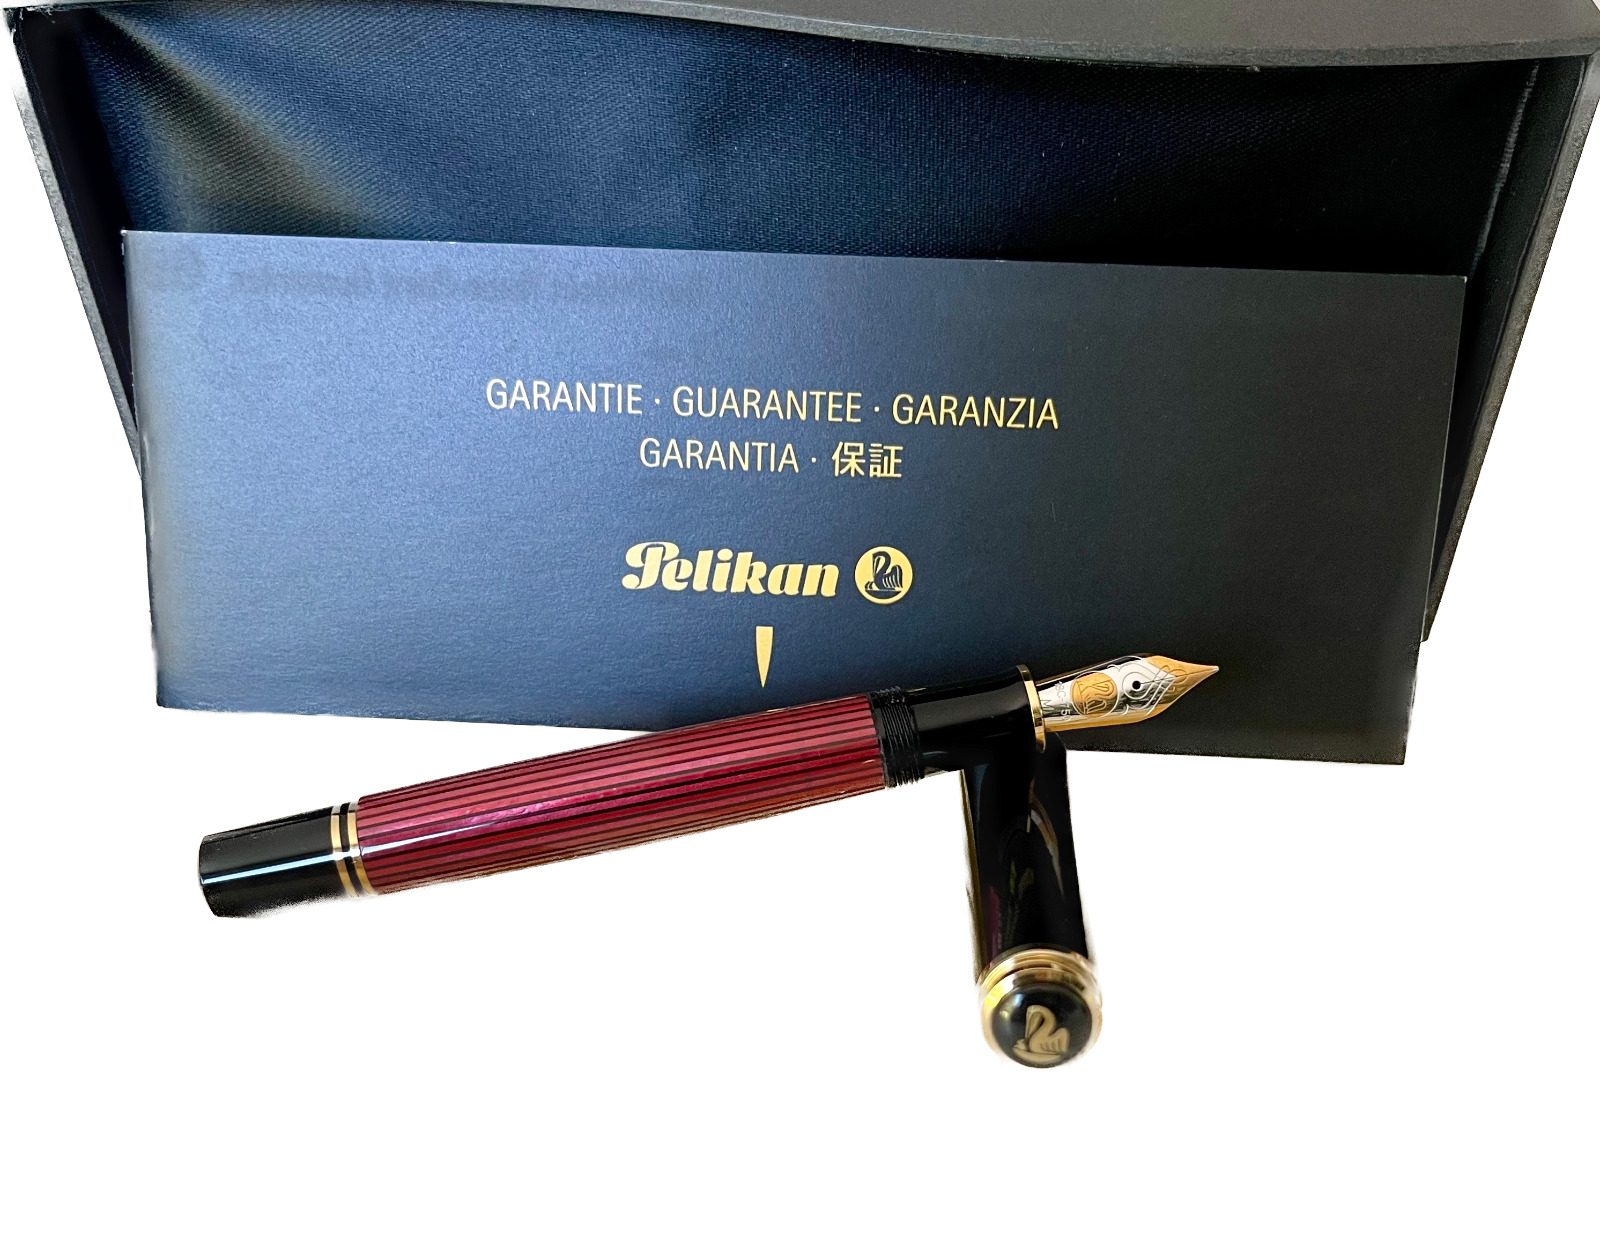 RARE Pelikan Souveran M800 Fountain Pen - Black-Red M Nib NEW AND UNUSED IN BOX